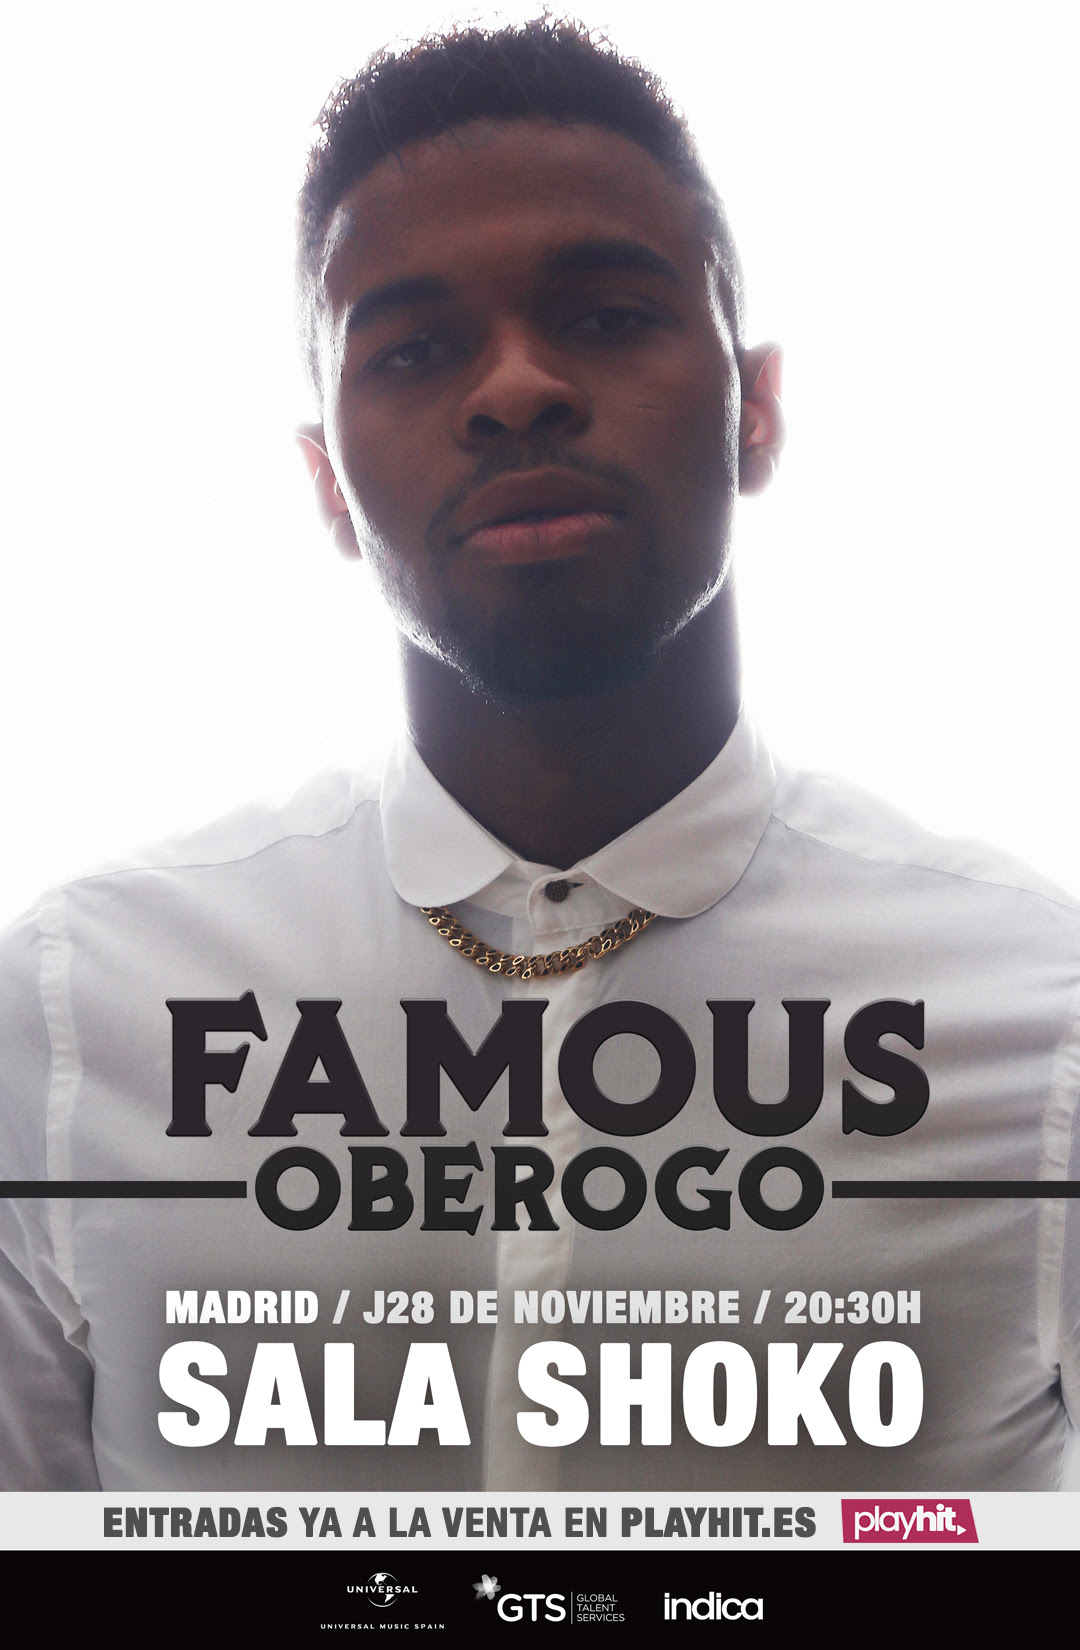 Famous Oberogo ofrecerá su primer concierto en Madrid